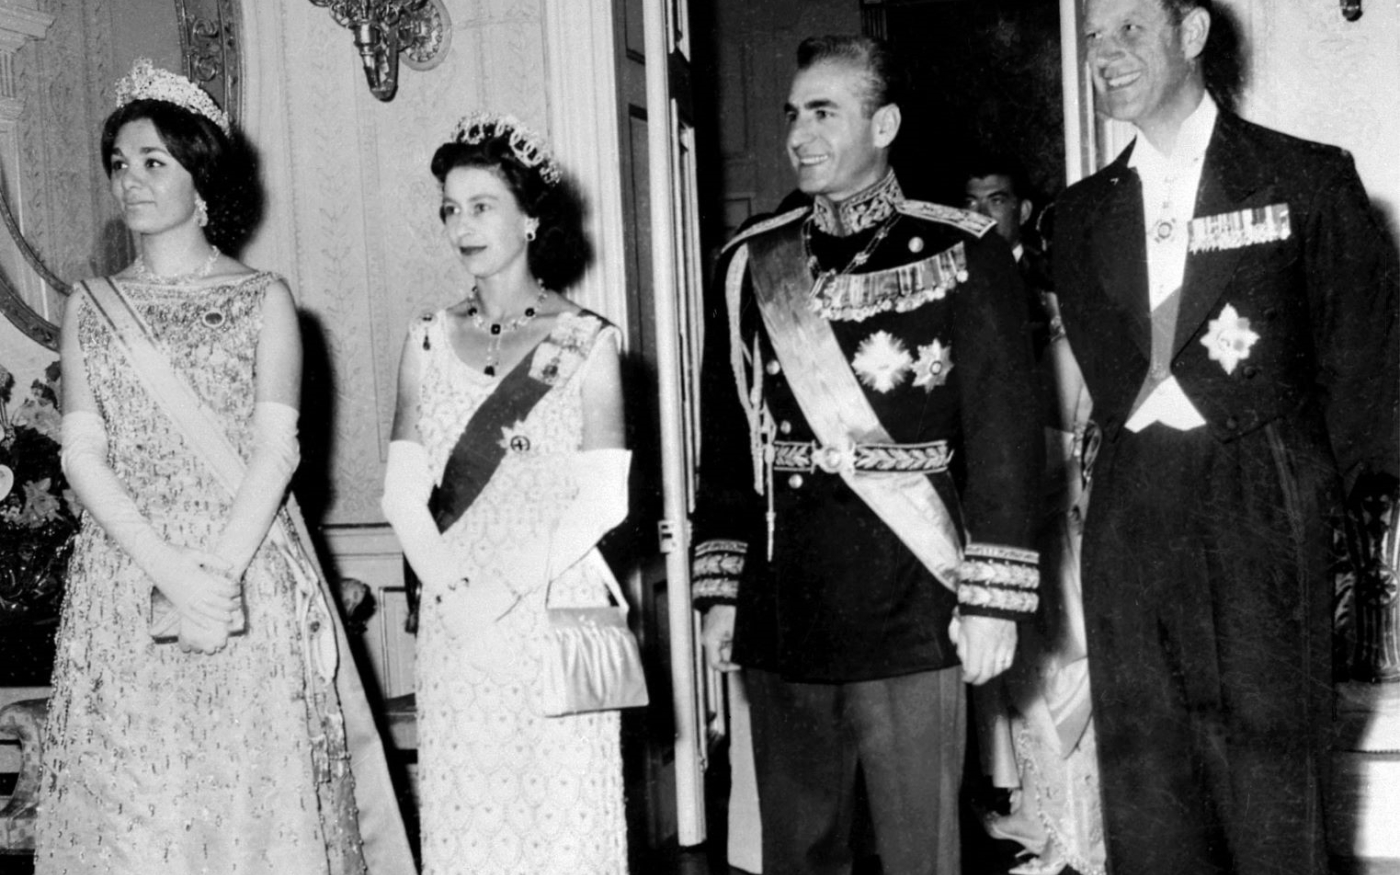 La reine Elizabeth II et le prince Philip posent avec le Shah Mohammad Reza Pahlavi d’Iran et son épouse Farah Pahlavi lors de leur visite d’État, en mars 1961 à Téhéran (AFP)